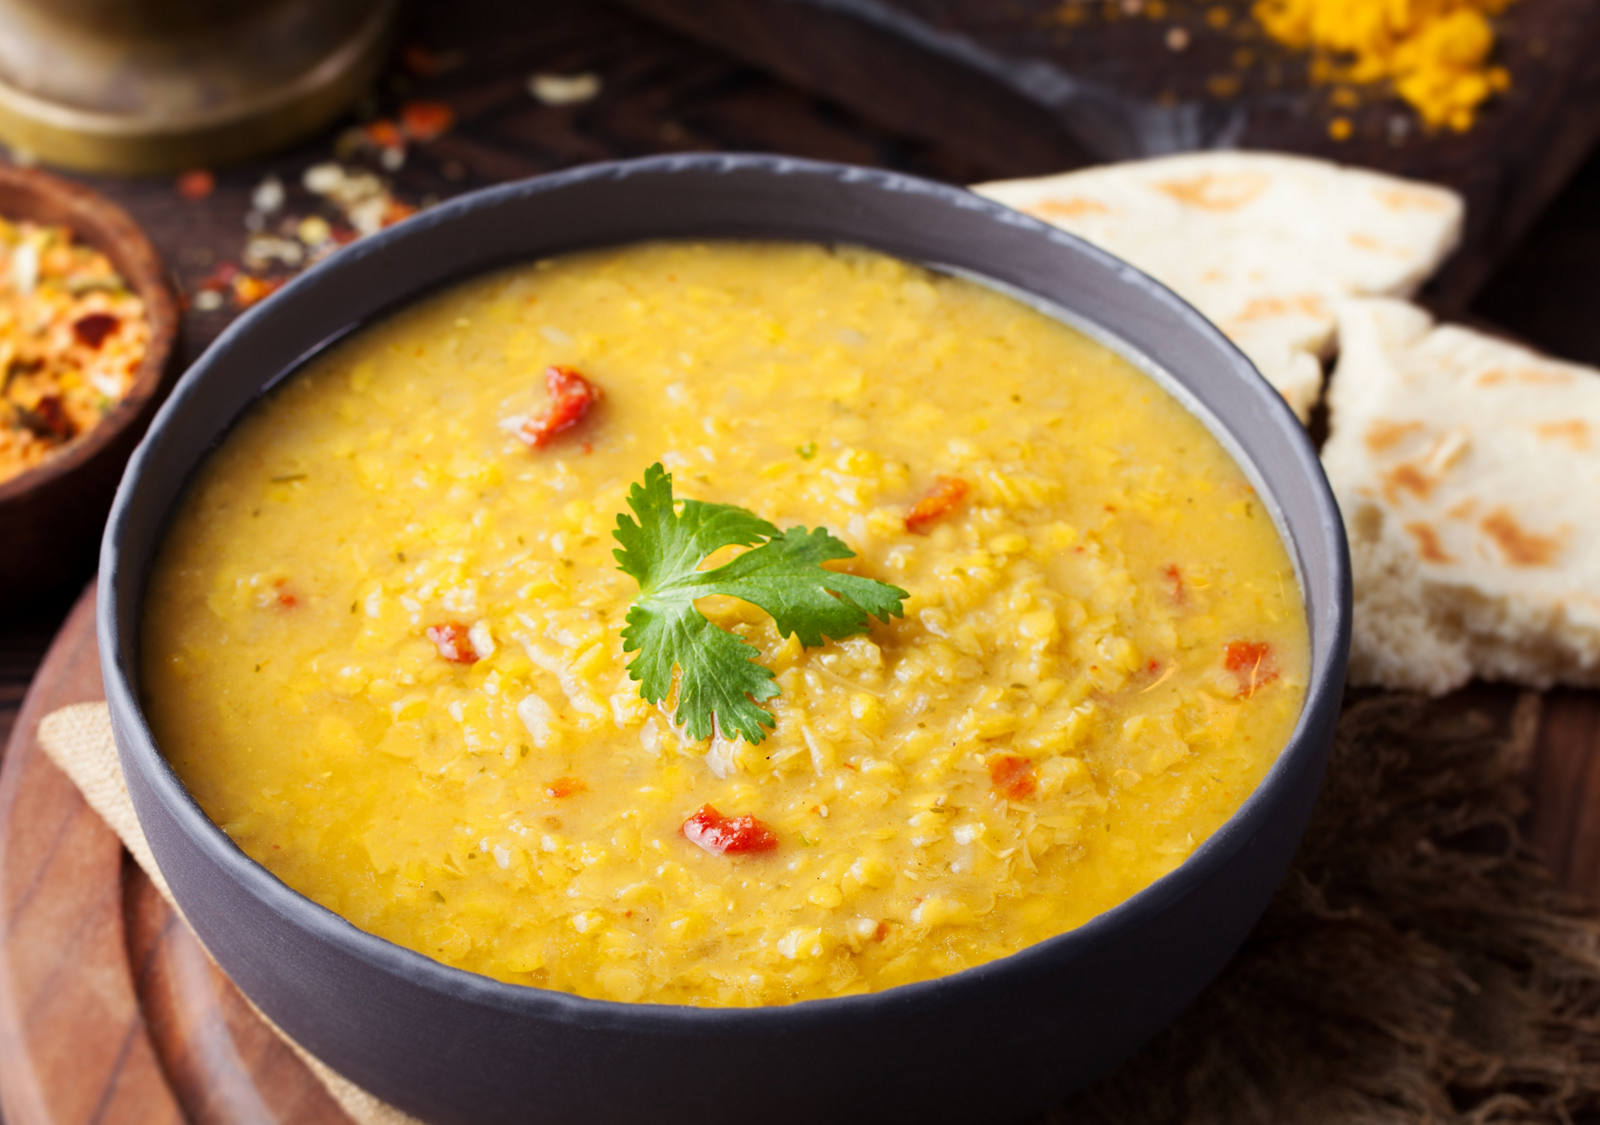 Recipe: Indian lentil soup